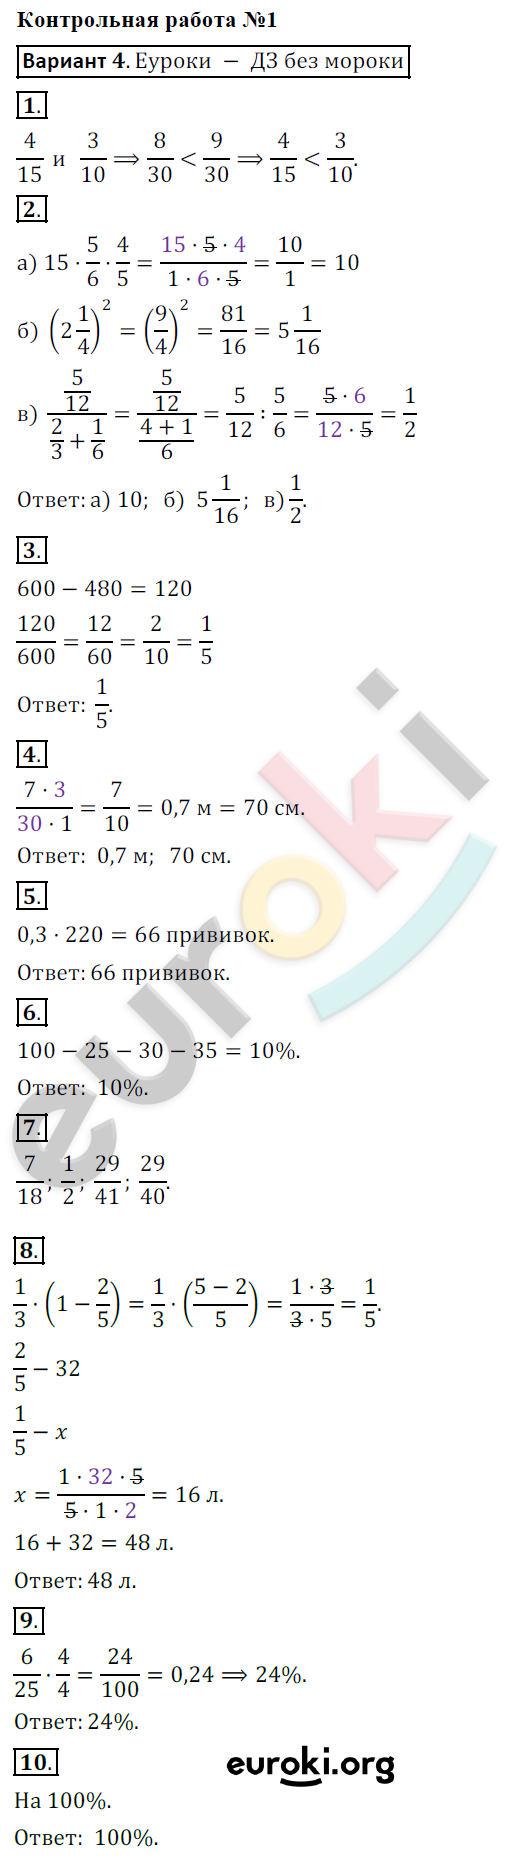 Контрольные работы по математике 6 класс. ФГОС Кузнецова, Минаева Вариант 4